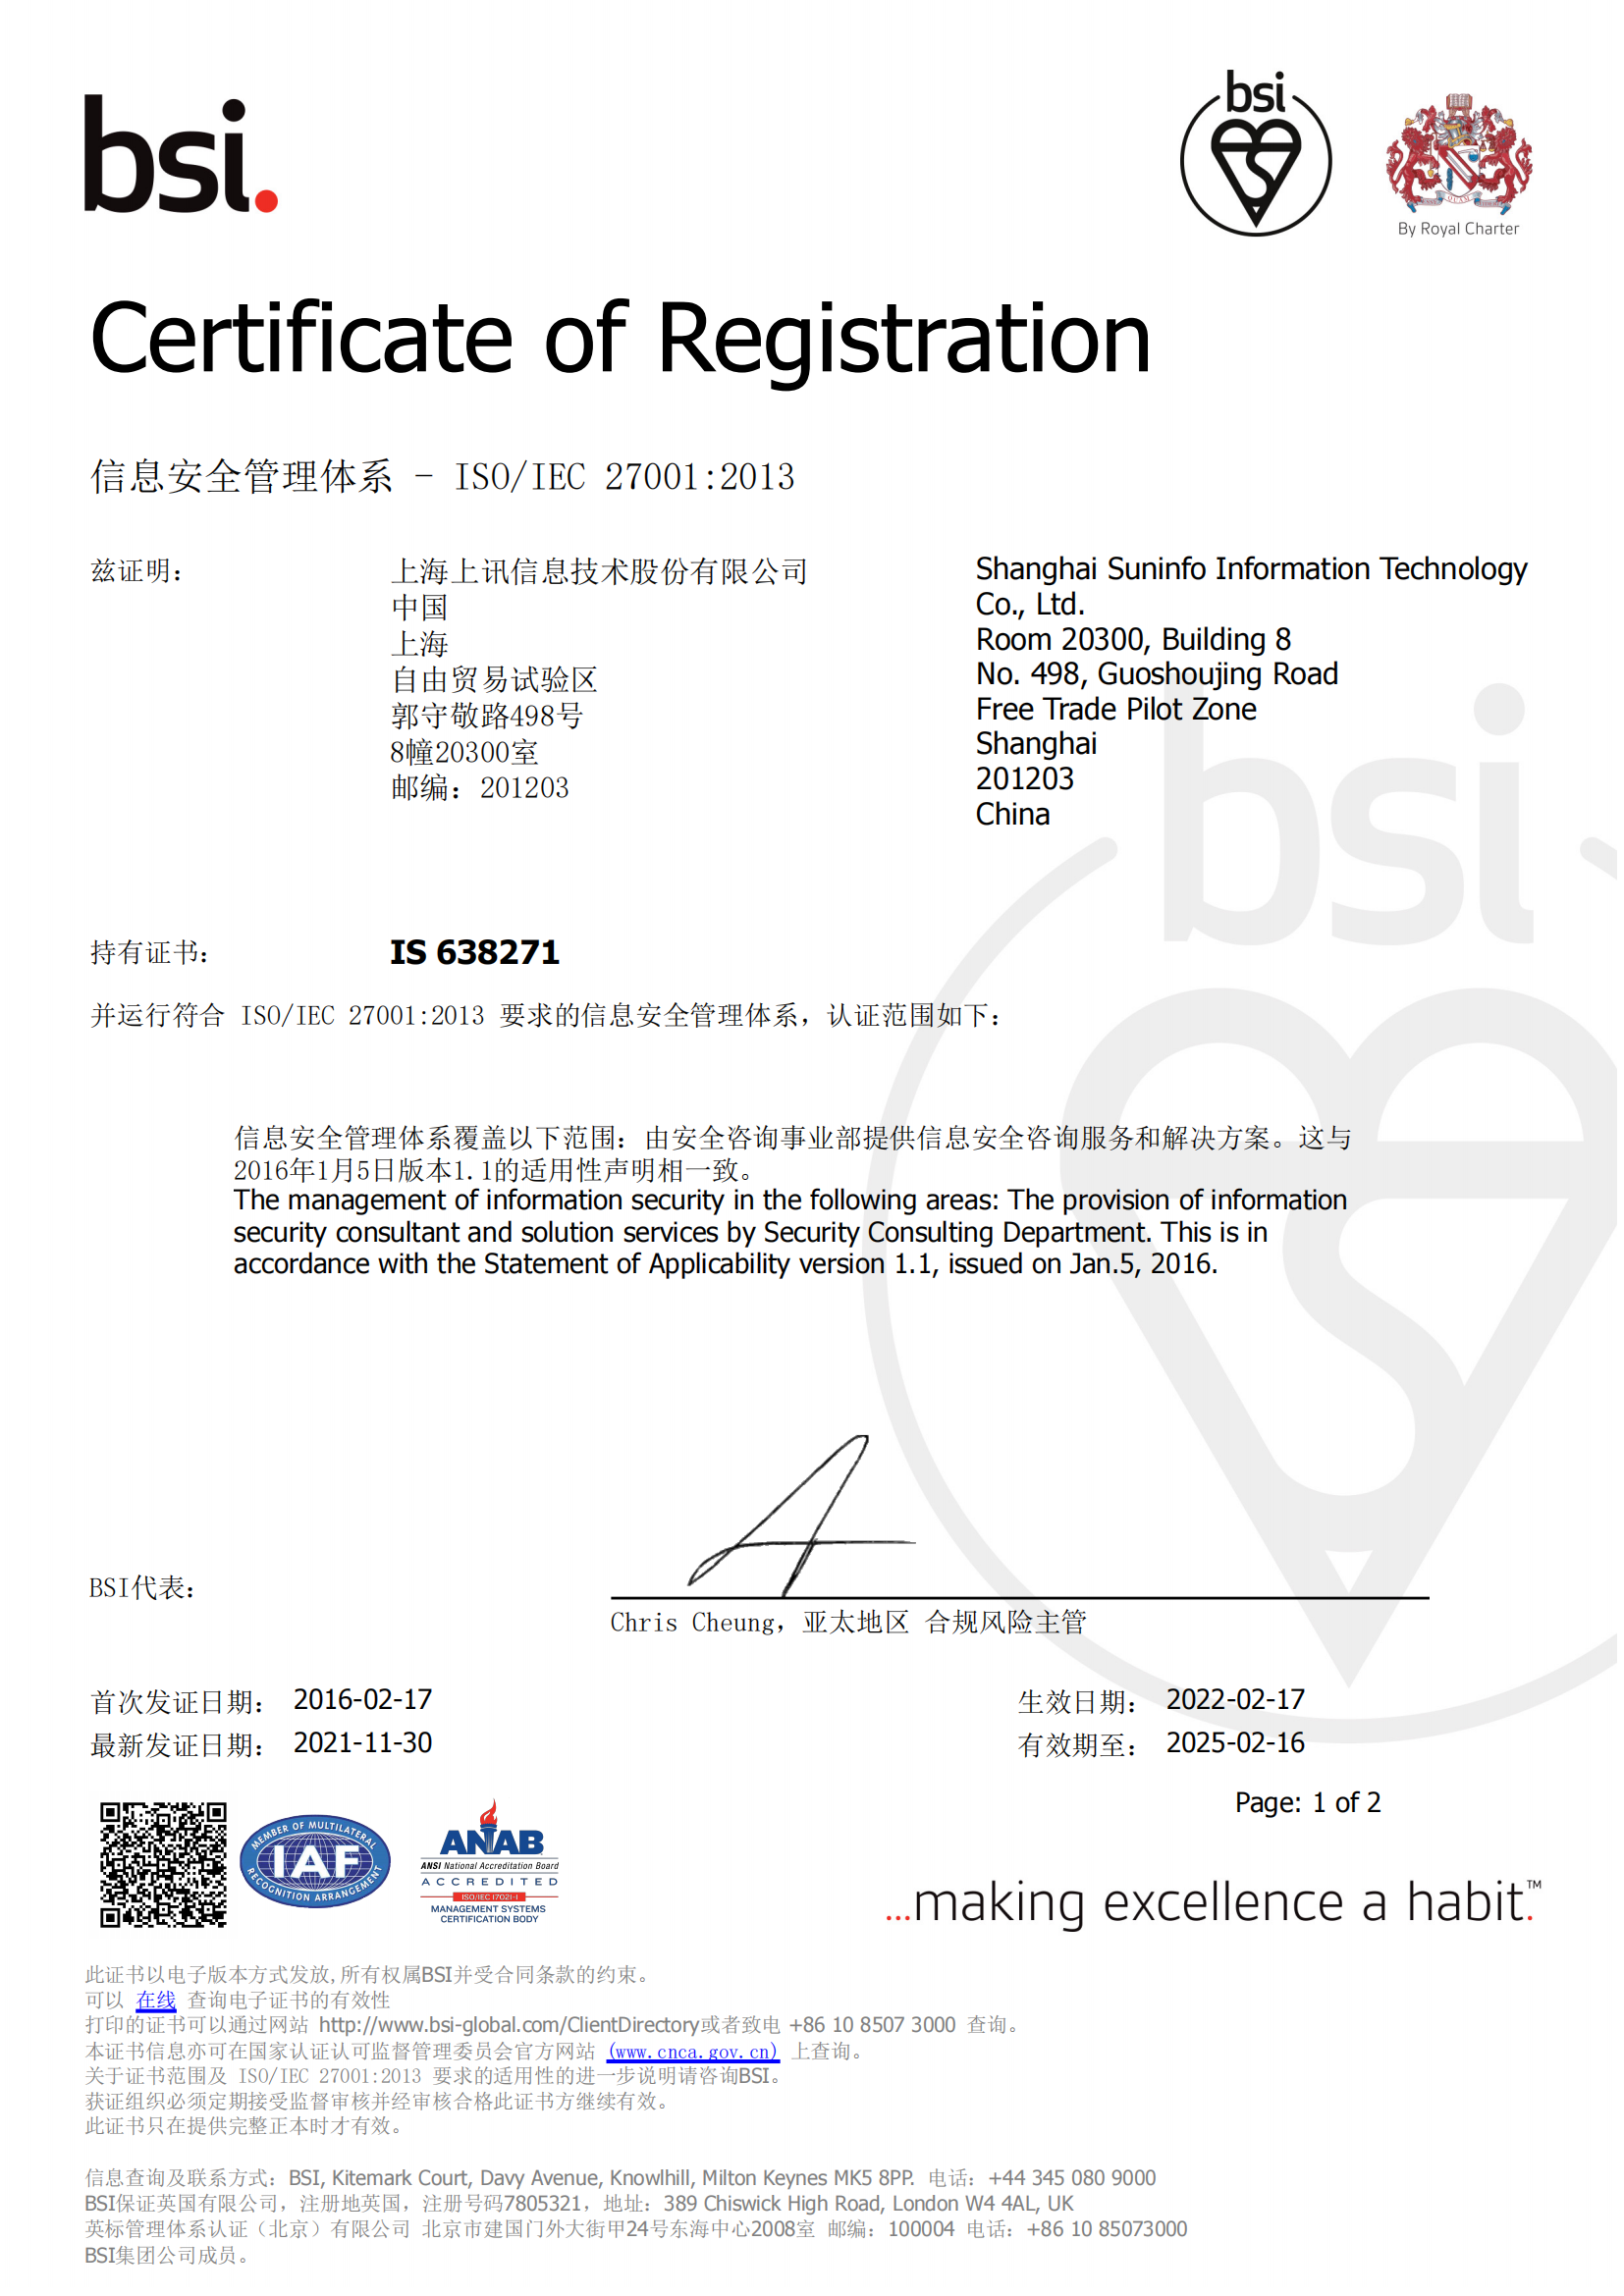 BSI ISO IEC 27001 Certificate